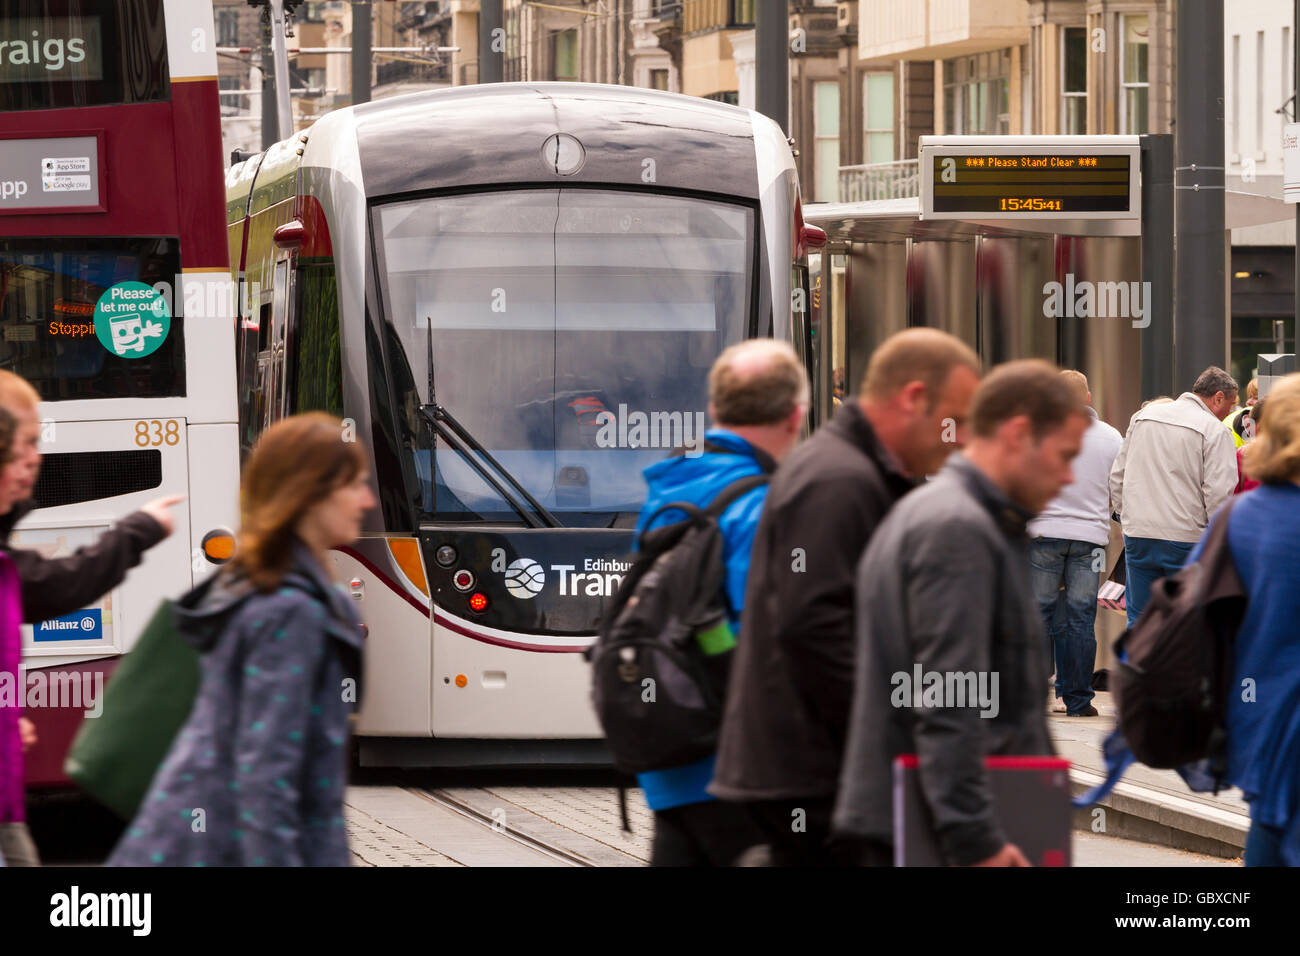 Le tram arrive à la plate-forme, Princes Street, Edinburgh, Ecosse Banque D'Images